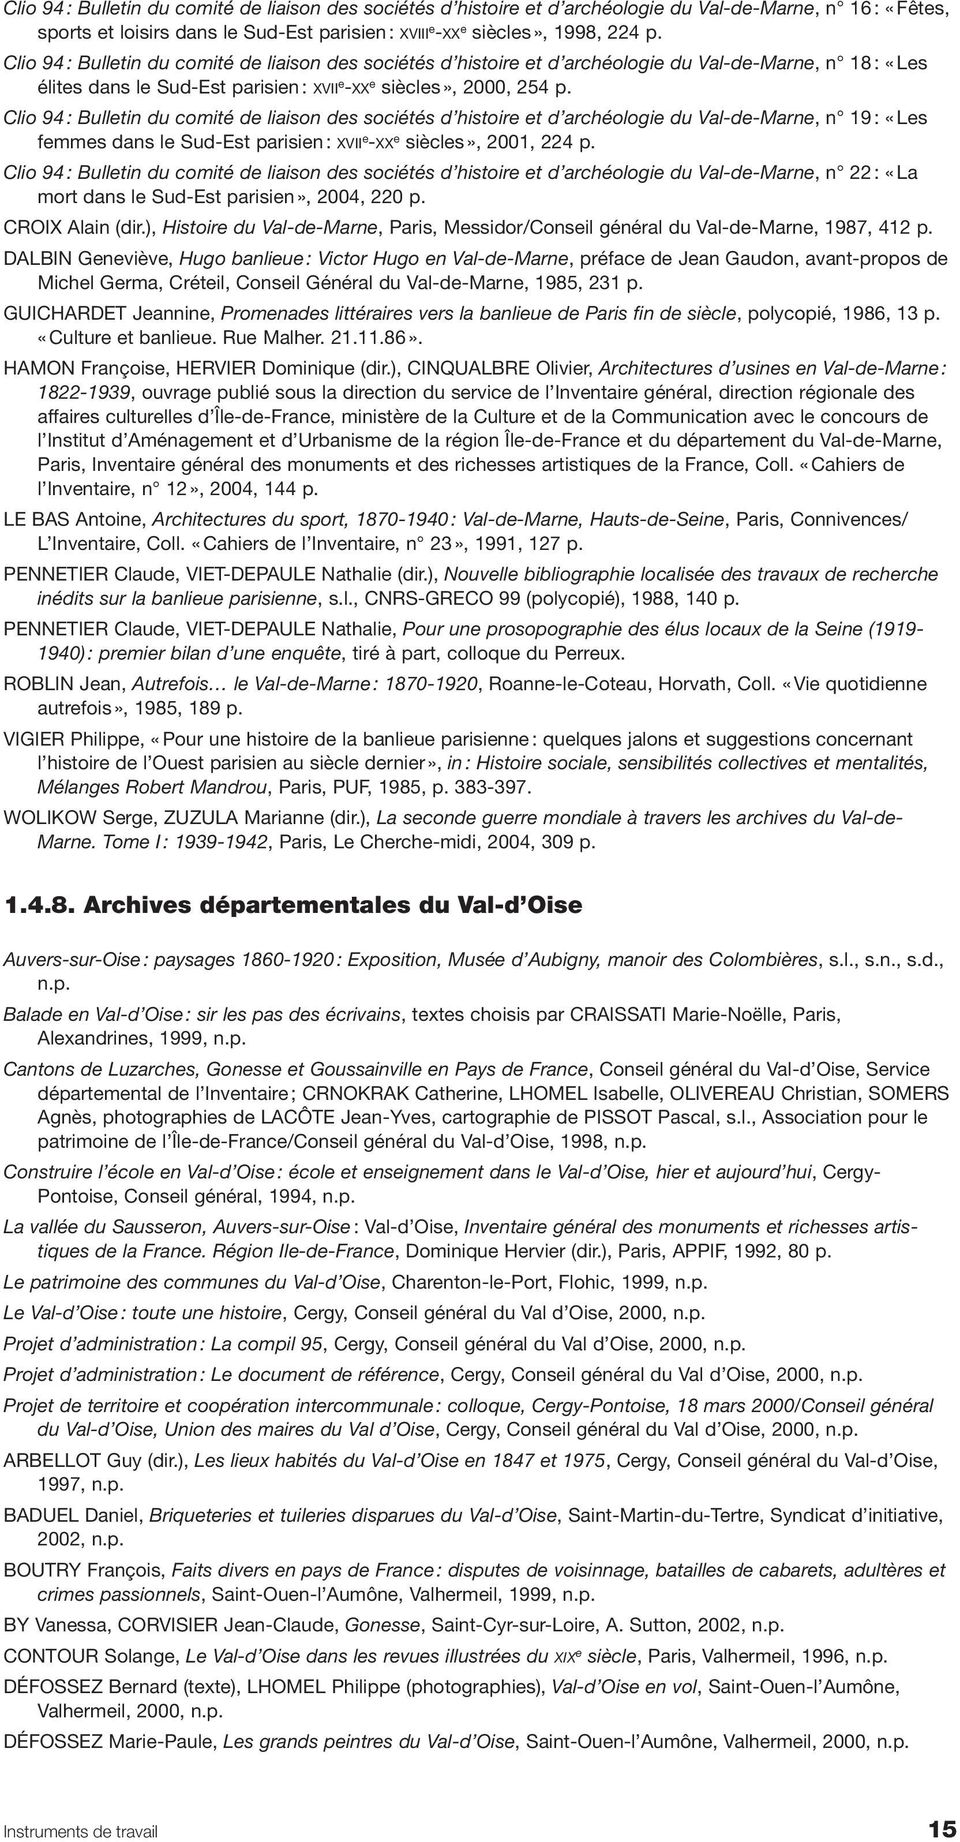 Clio 94 : Bulletin du comité de liaison des sociétés d histoire et d archéologie du Val-de-Marne, n 19 : «Les femmes dans le Sud-Est parisien : XVII e -XX e siècles», 2001, 224 p.